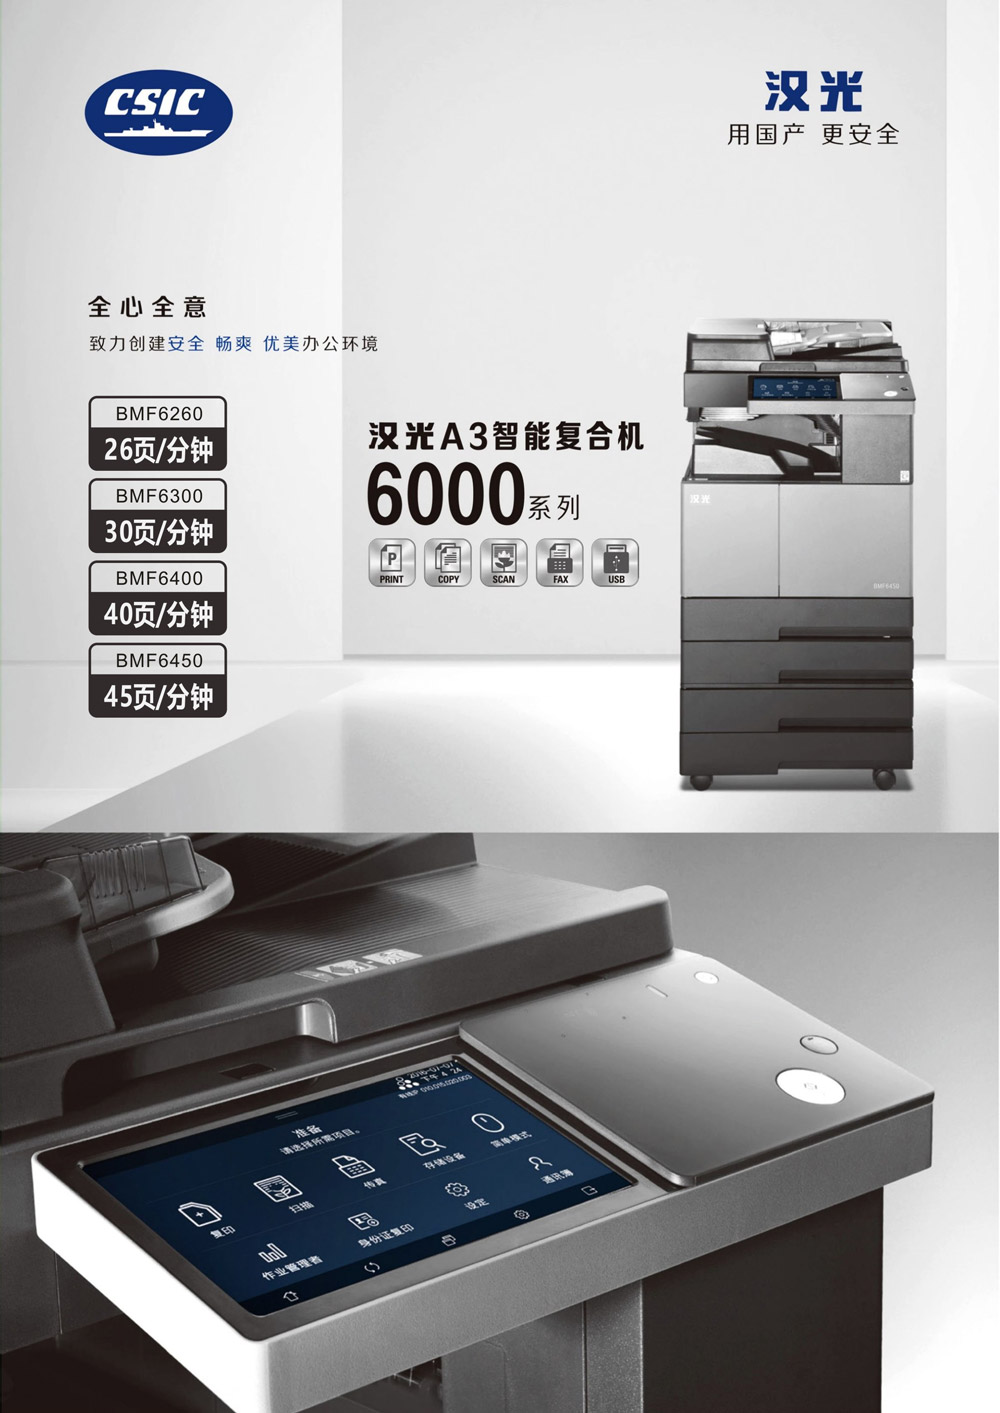 汉光黑白复合机6000系列-宣传图.jpg